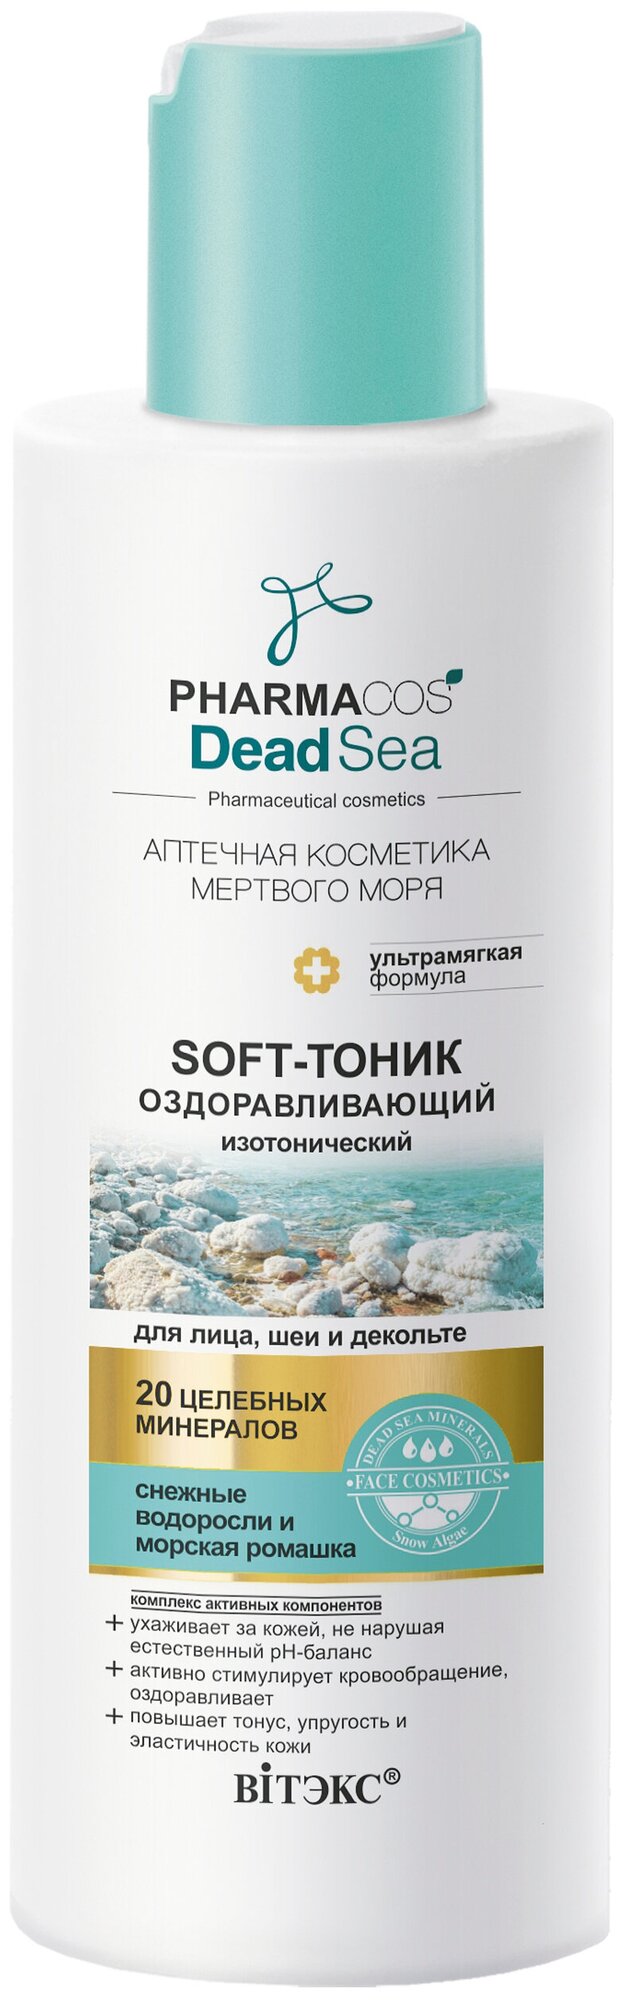 Оздоравливающий soft-тоник изотонический для лица шеи и декольте PHARMACOS DEAD SEA 150 мл